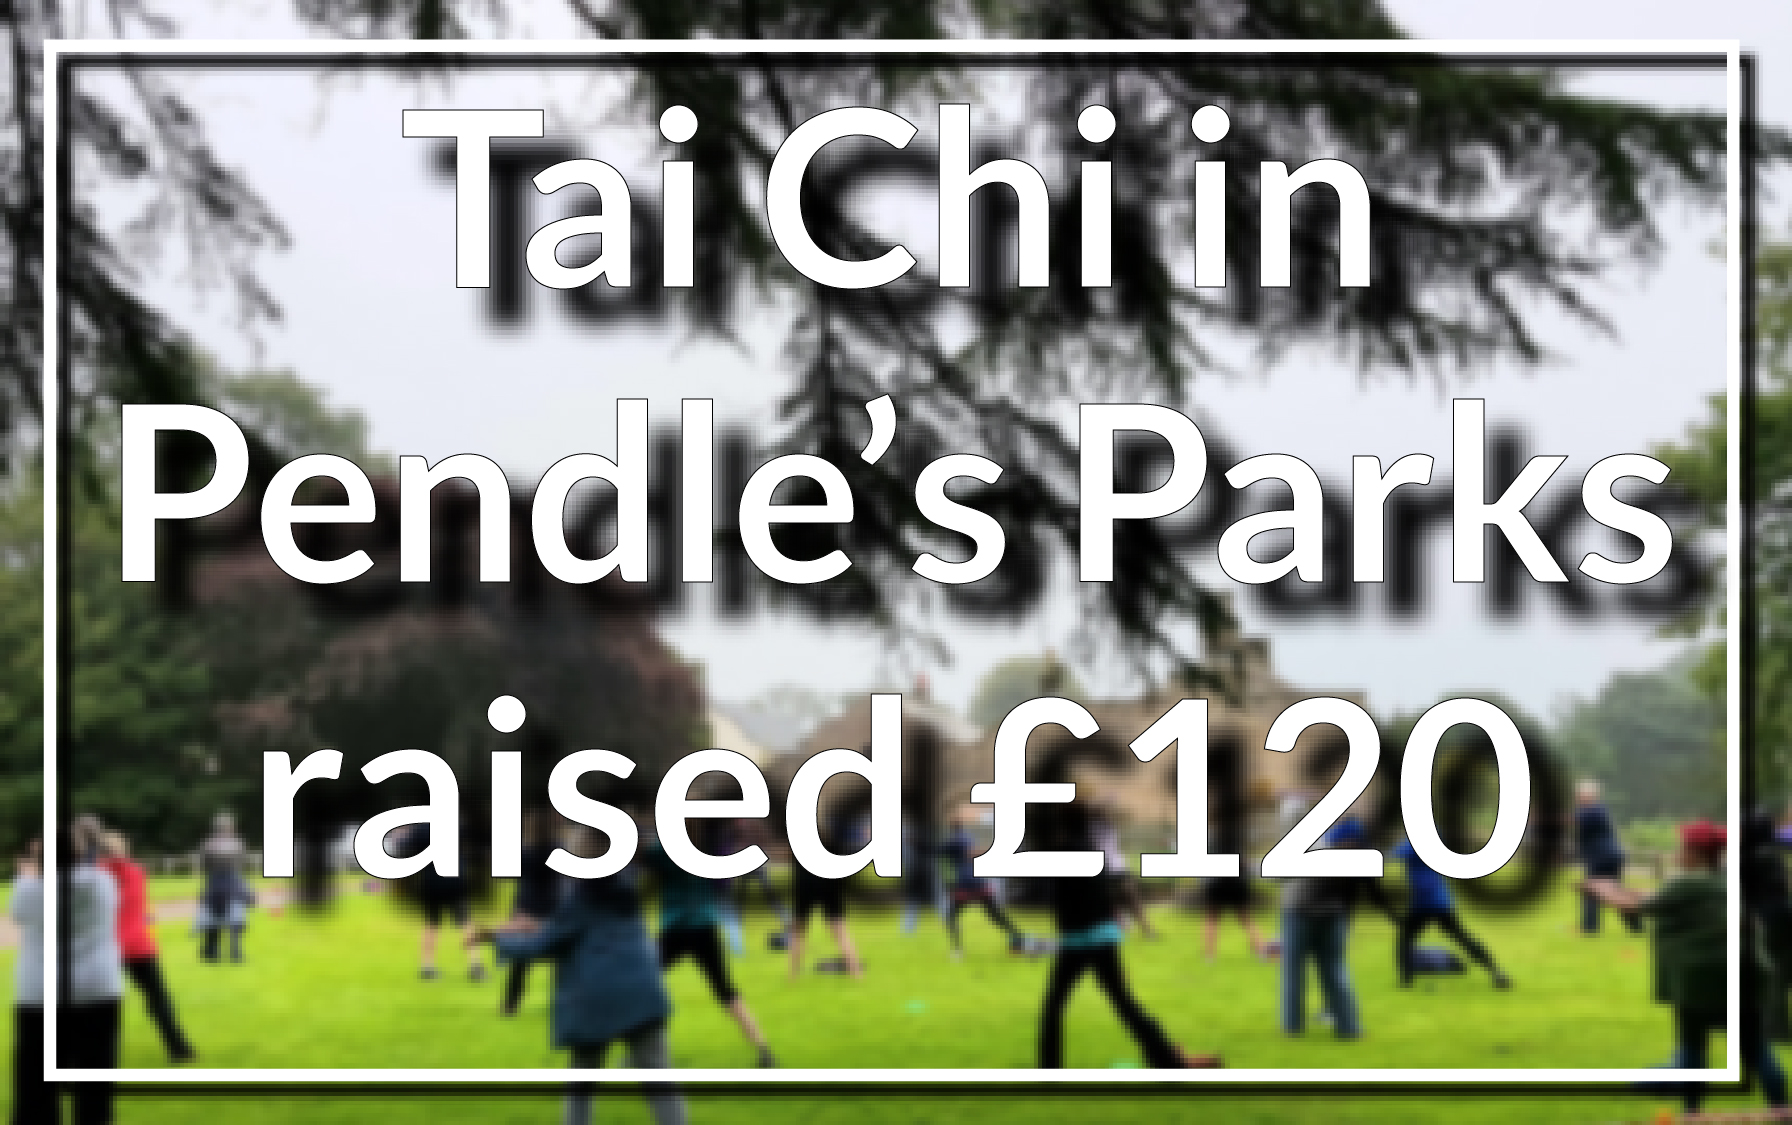 Tai Chi in Pendle’s Parks raises £120